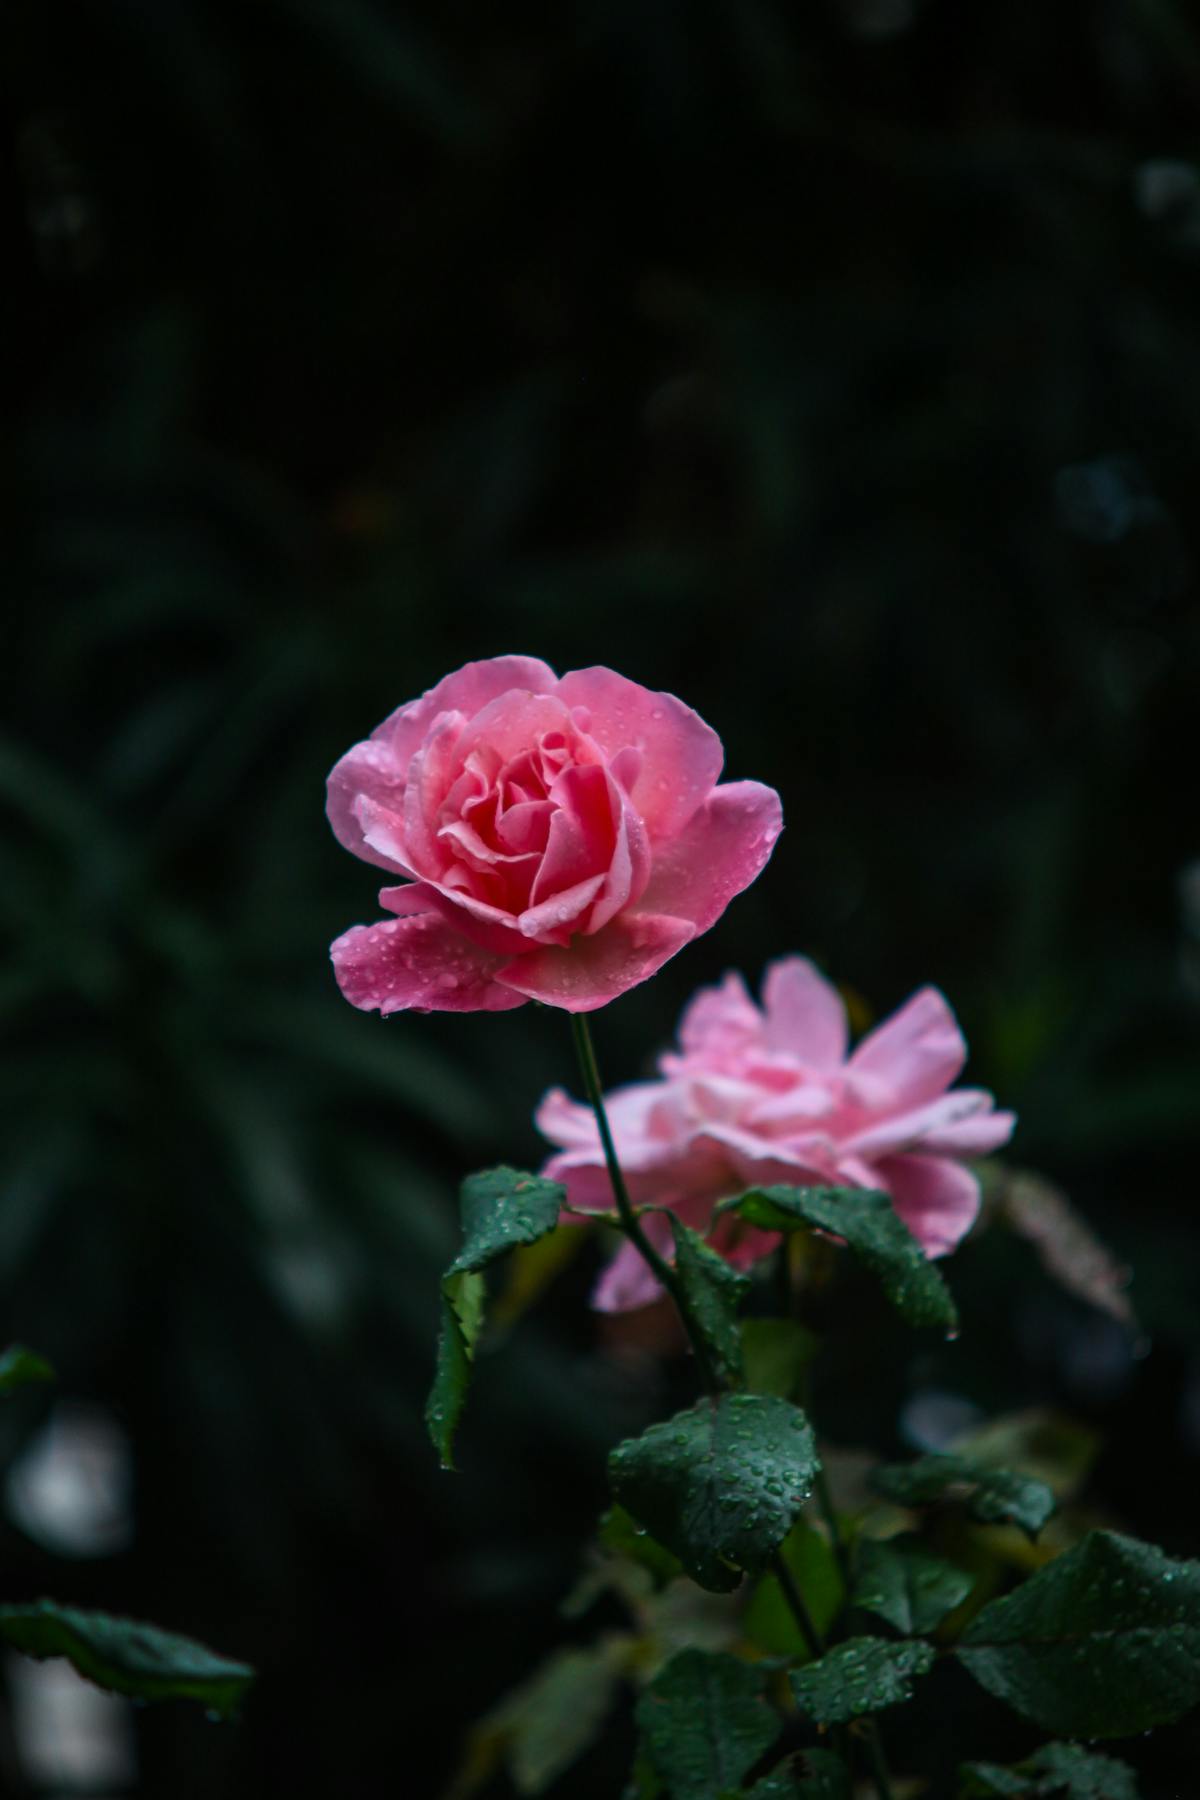 玫瑰 露珠 自然 - Pixabay上的免费照片 - Pixabay